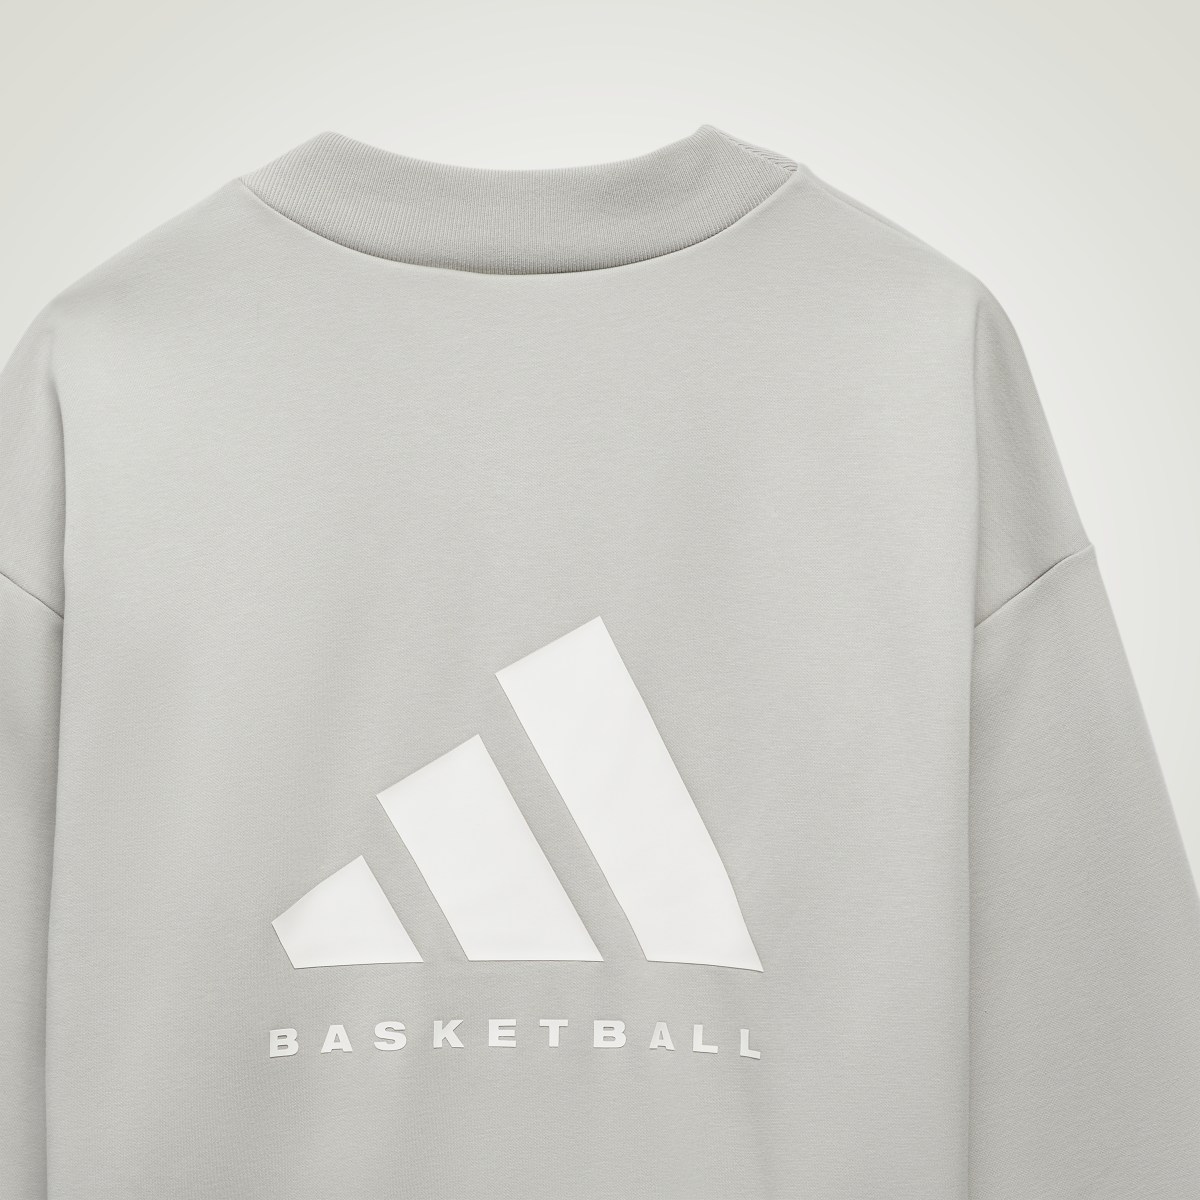 Adidas Basketball Crew Sweatshirt. 4